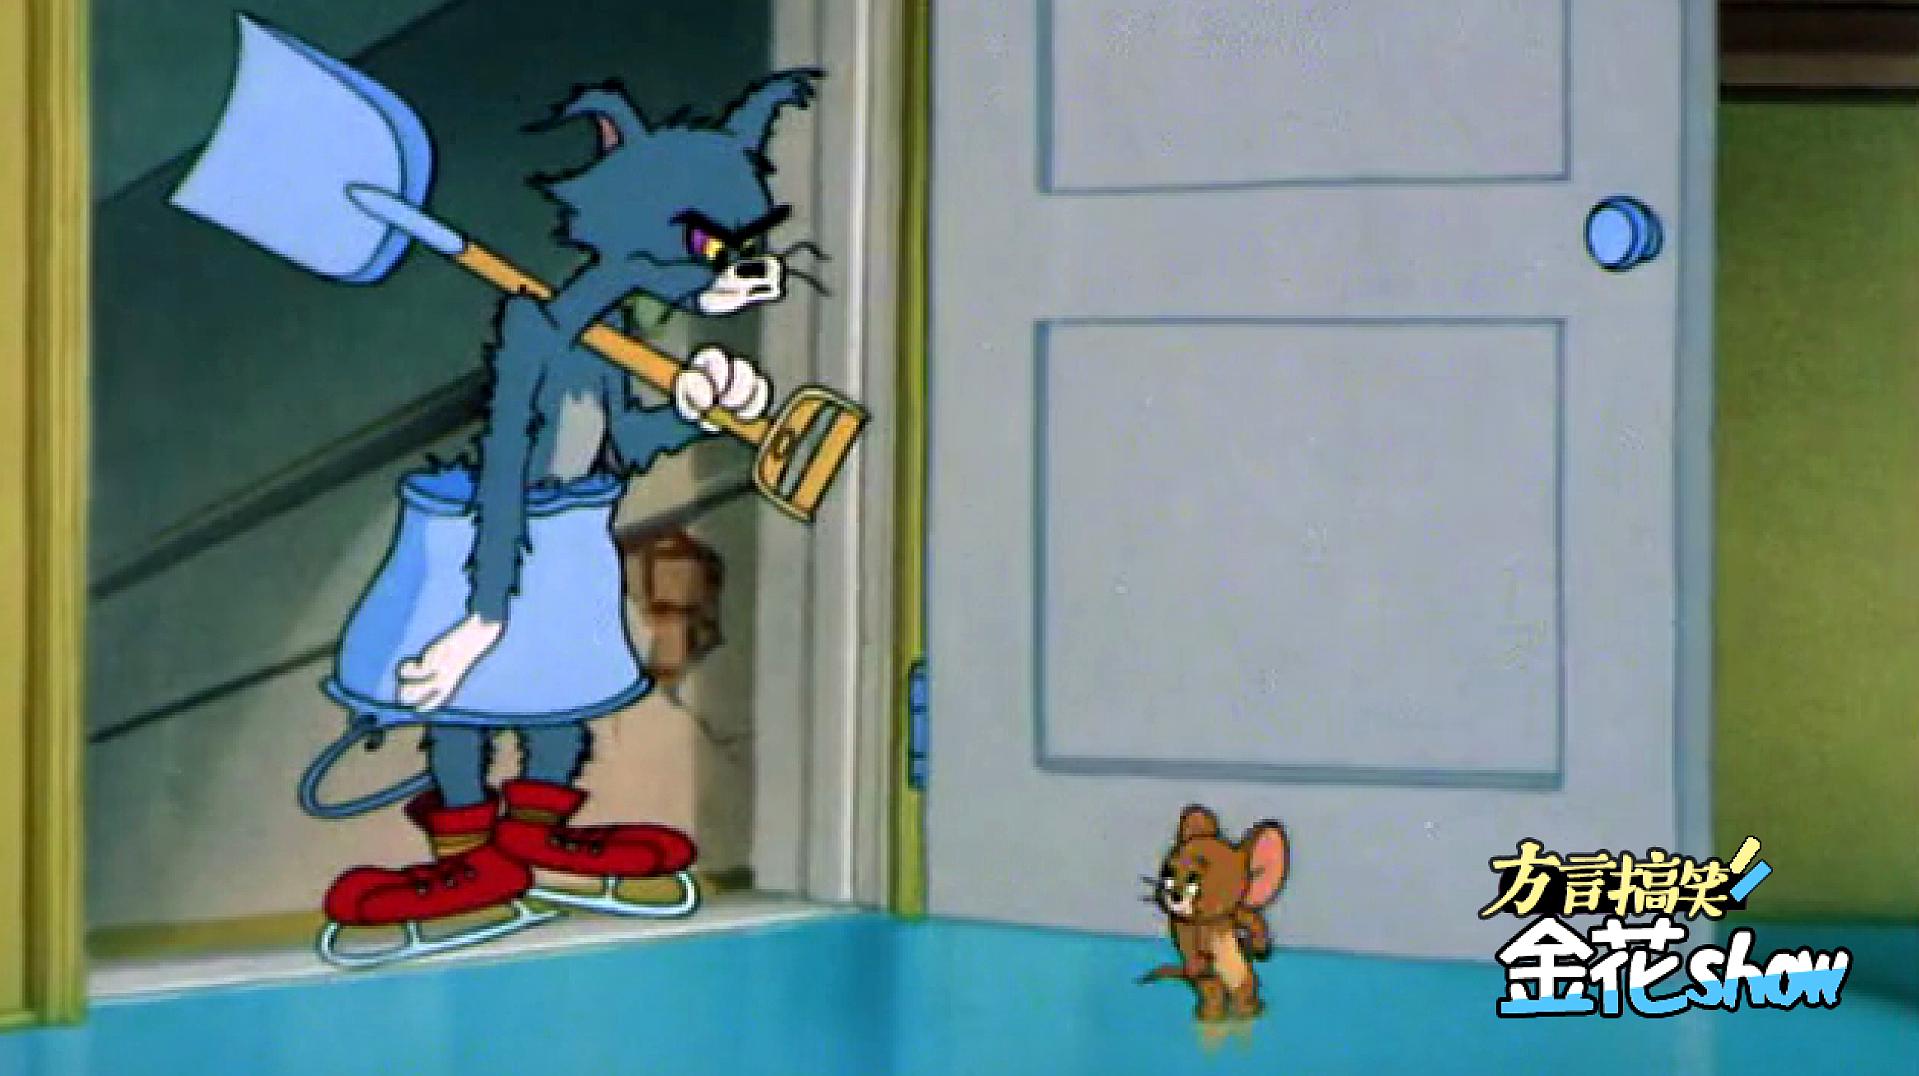 四川方言猫和老鼠:汤姆猫跟老鼠比赛滑冰闹笑话,笑了还想笑!